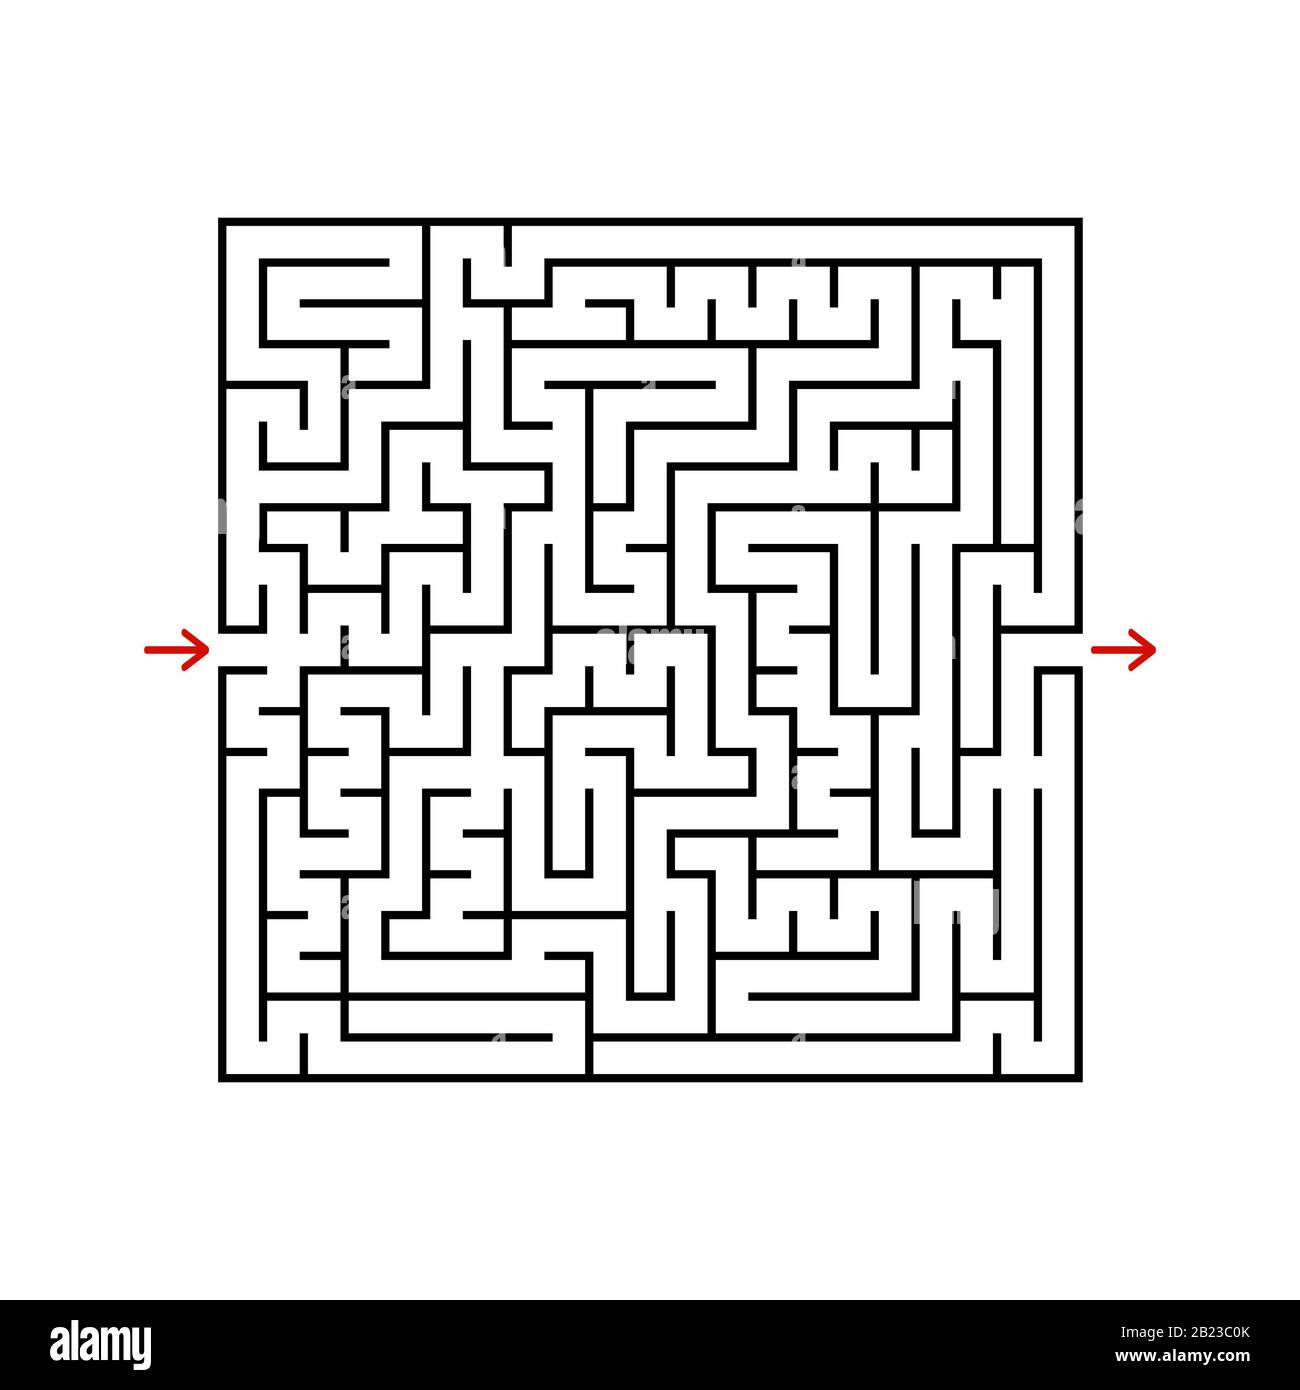 Labirinto quadrato nero con ingresso ed uscita. Un gioco per bambini e adulti. Semplice immagine vettoriale piatta isolata su sfondo bianco Illustrazione Vettoriale